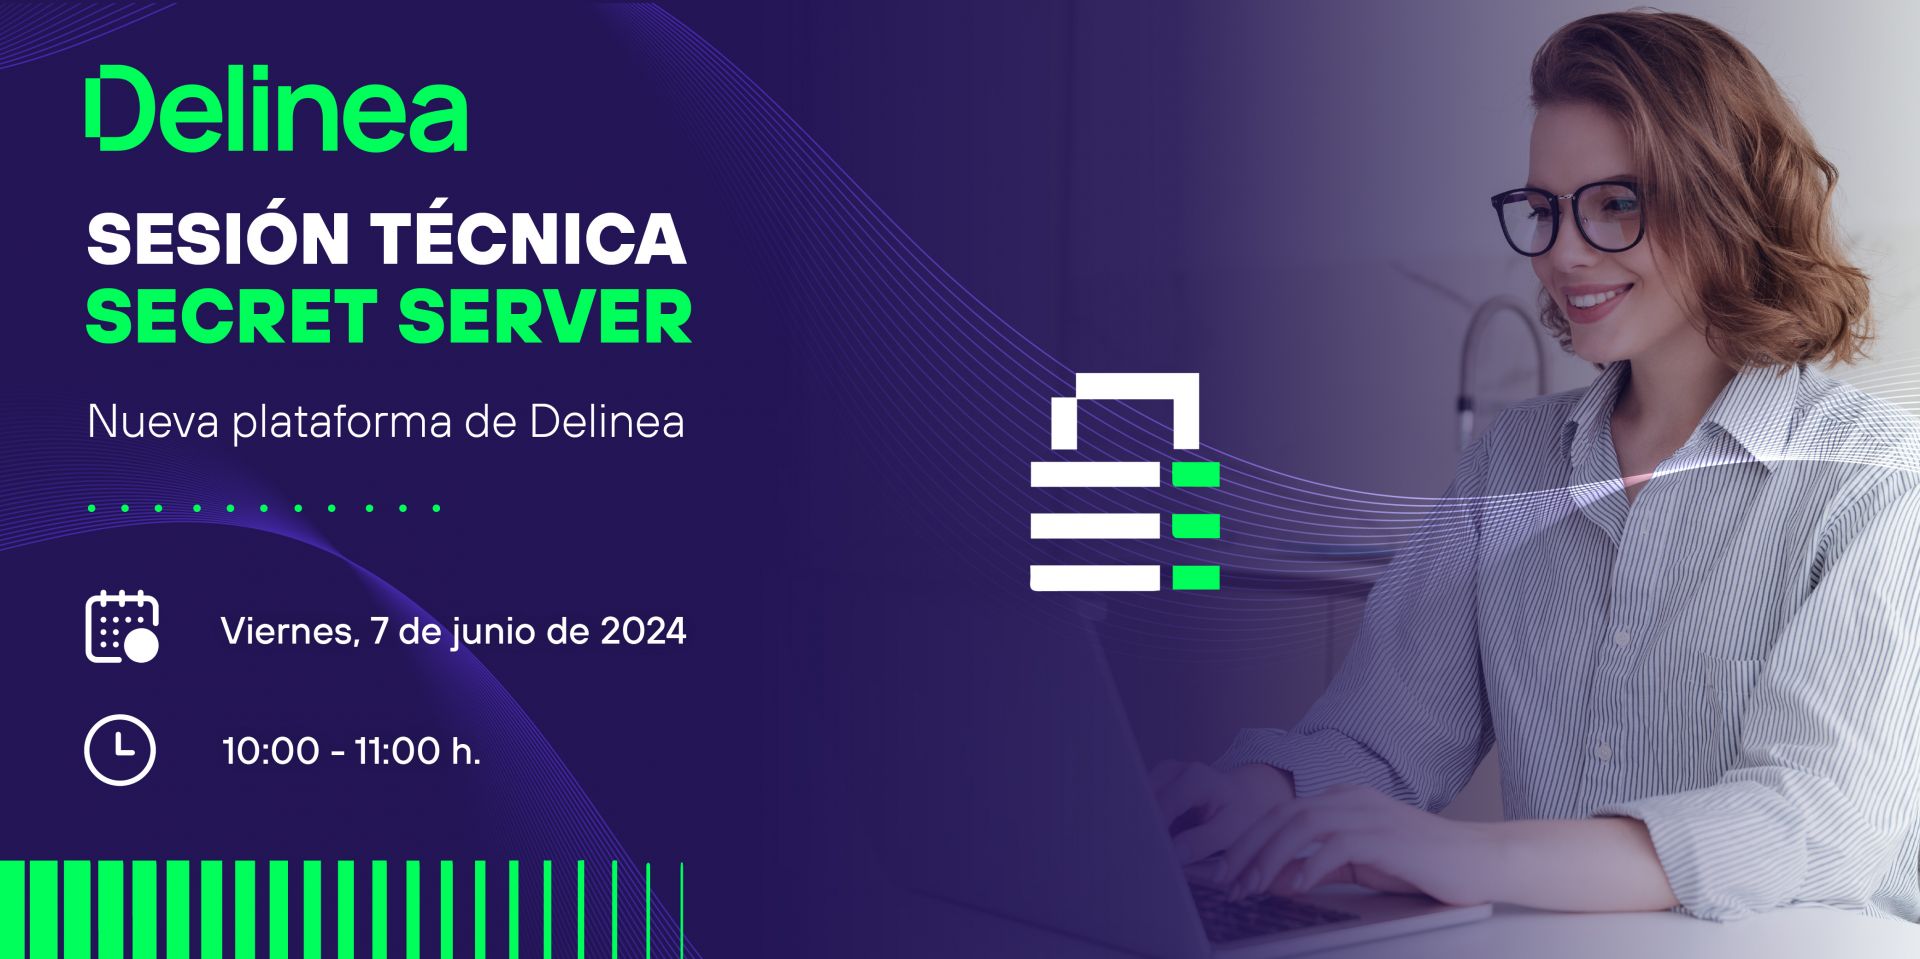 SESIÓN TÉCNICA DELINEA SECRET SERVER - Nueva plataforma de Delinea 